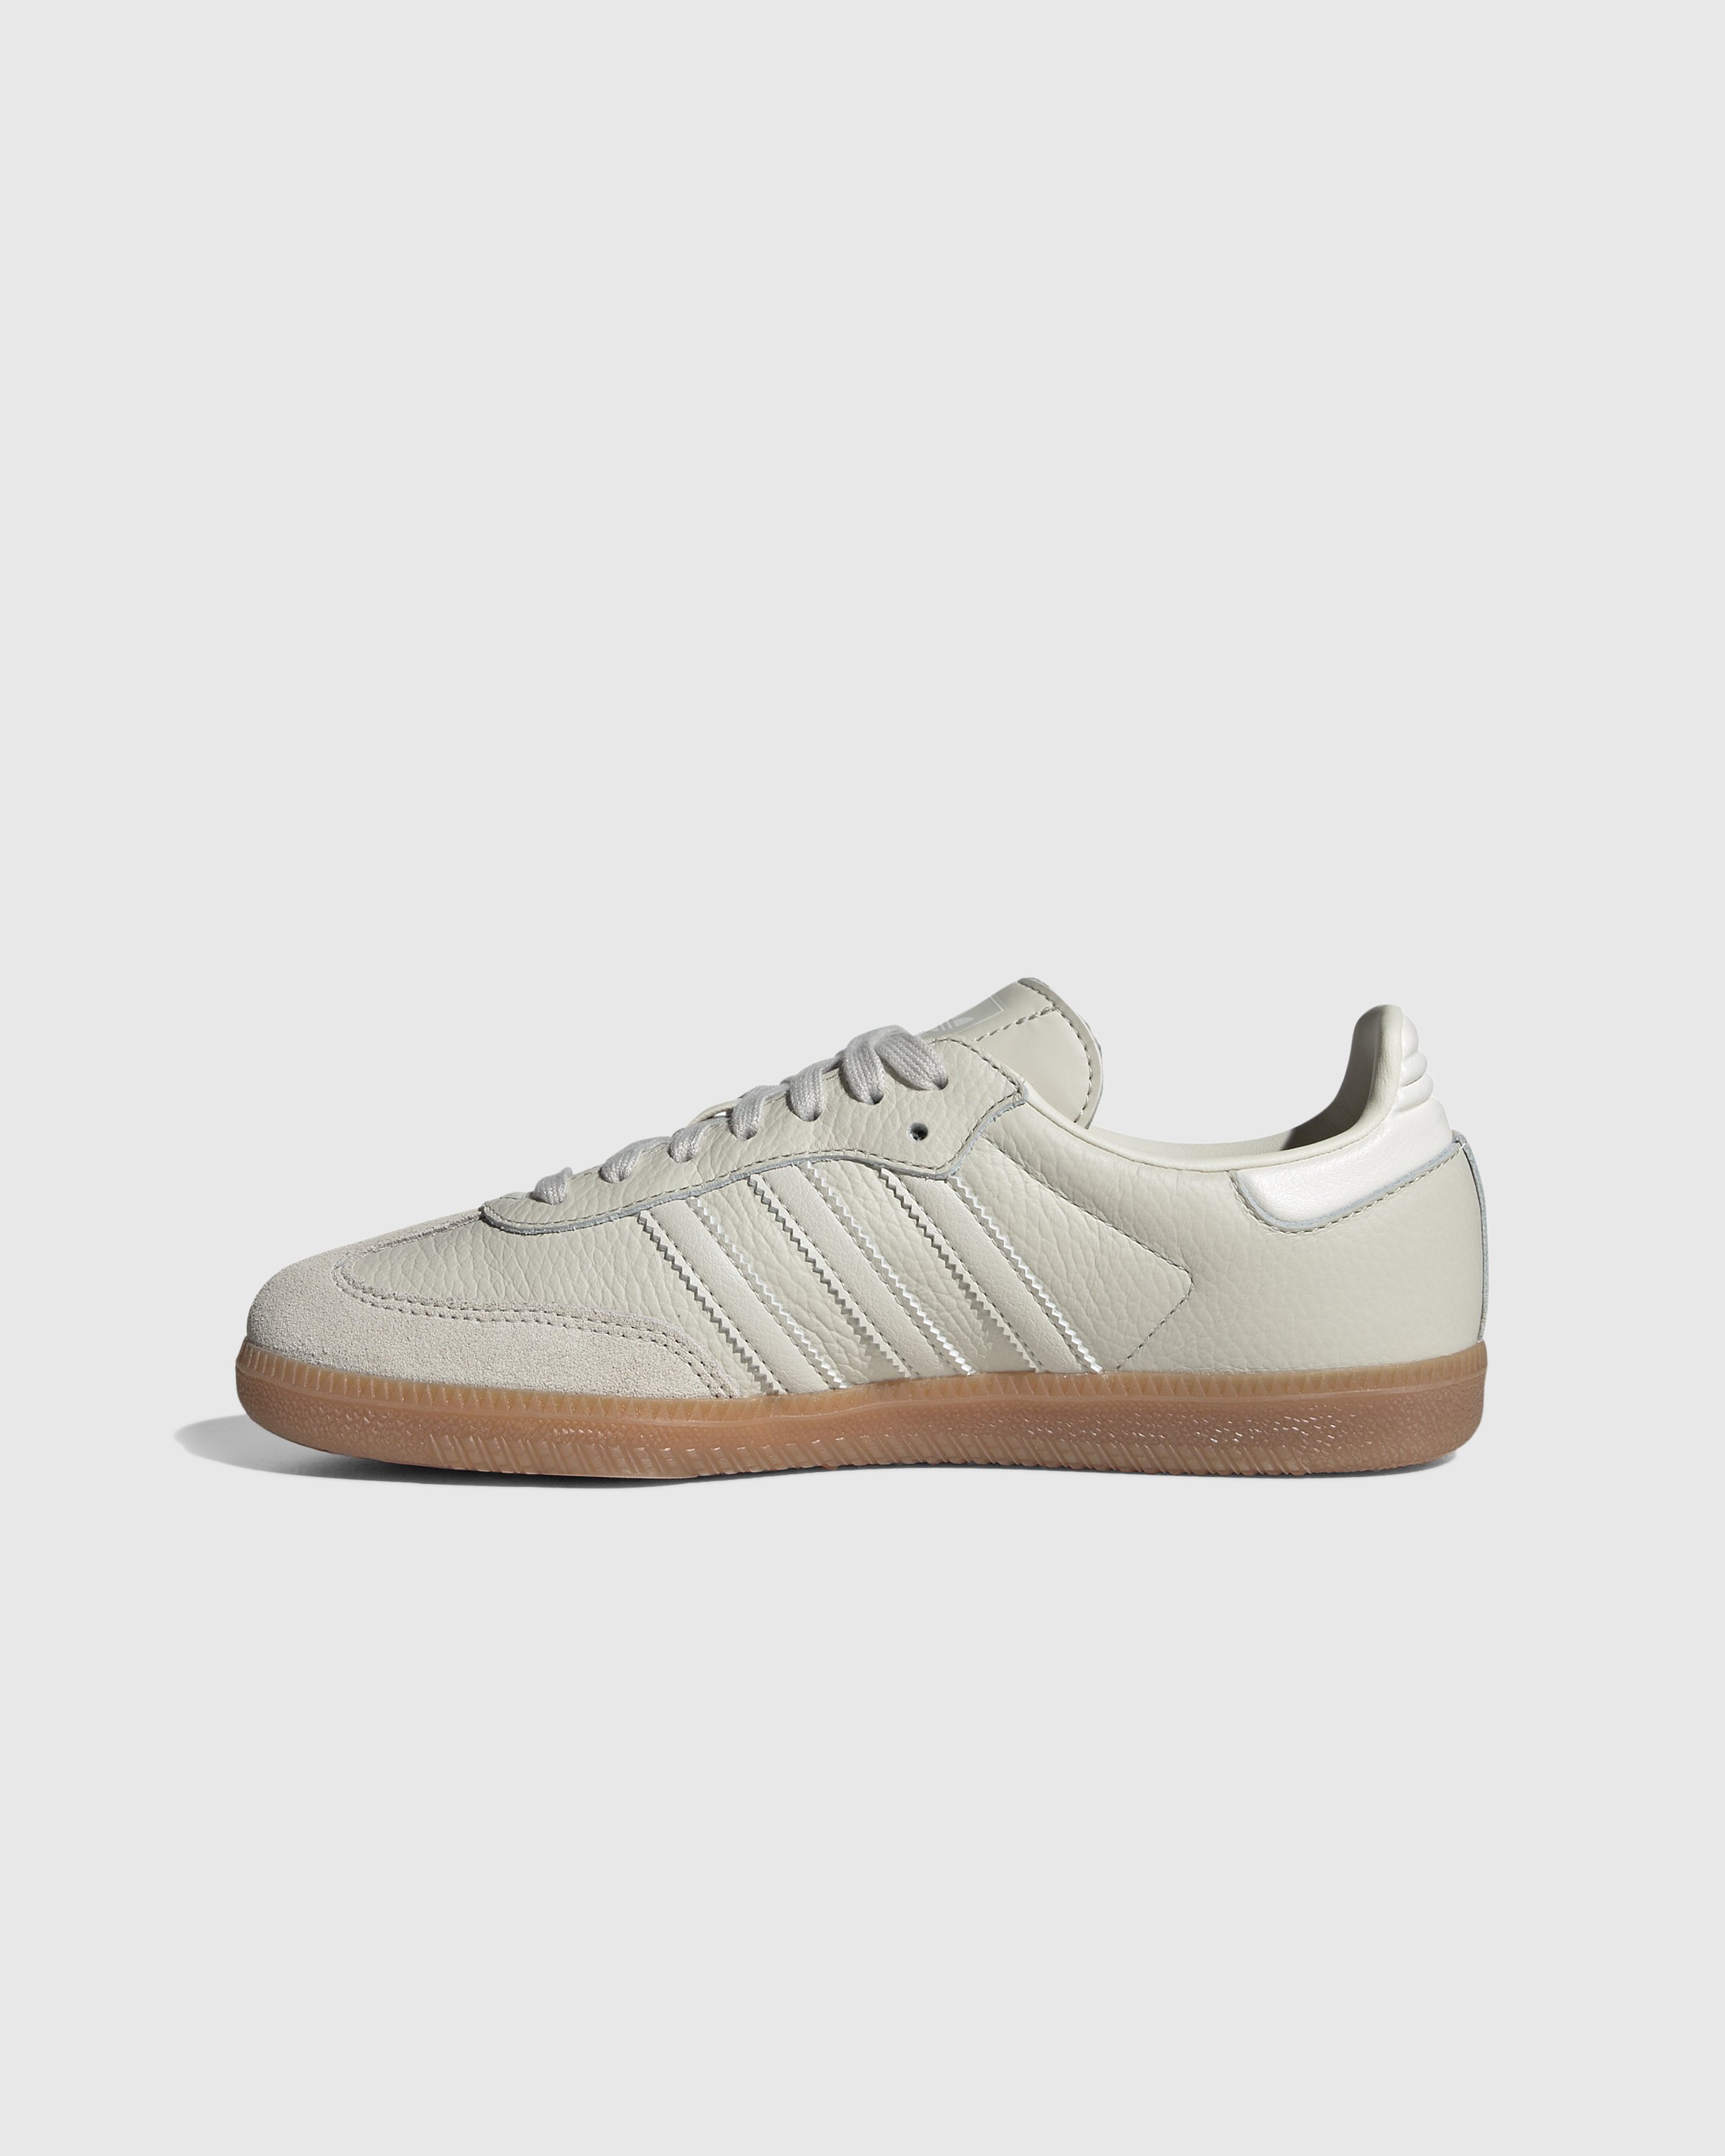 Adidas - Samba OG White Aluminium - Footwear - White - Image 2